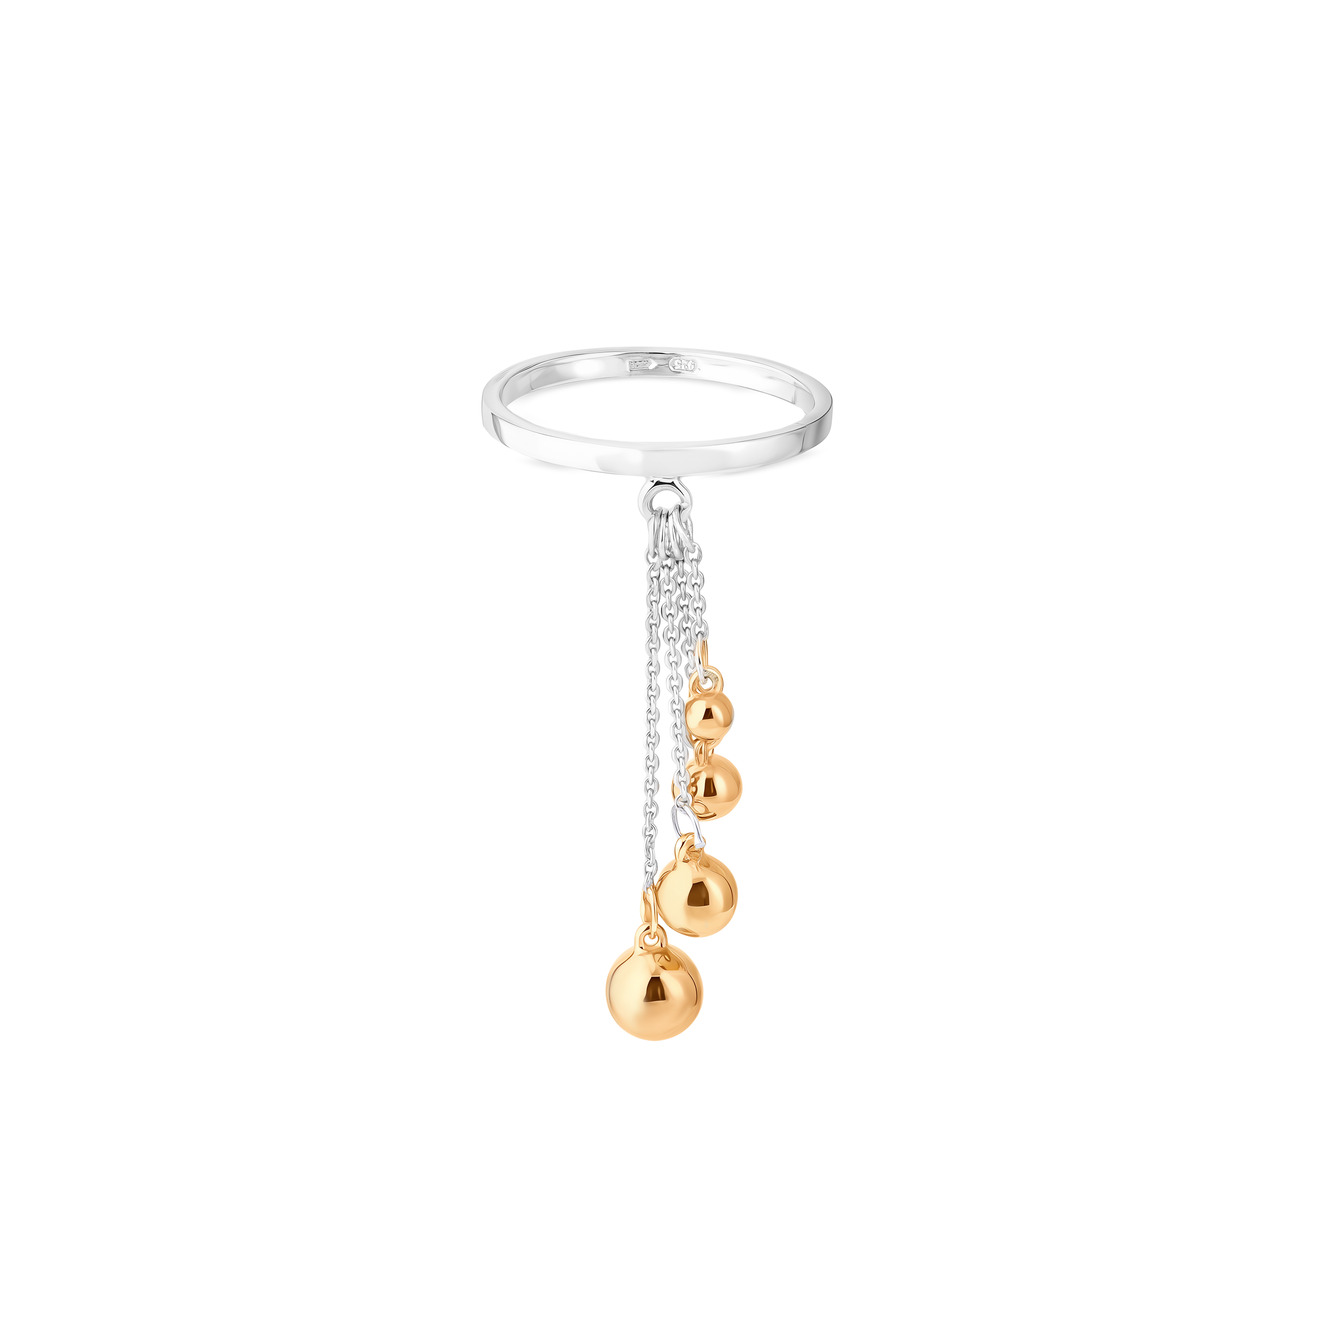 ура jewelry кольцо из серебра с позолоченными шариками на цепочке УРА jewelry Кольцо из серебра с позолоченными шариками на цепочке